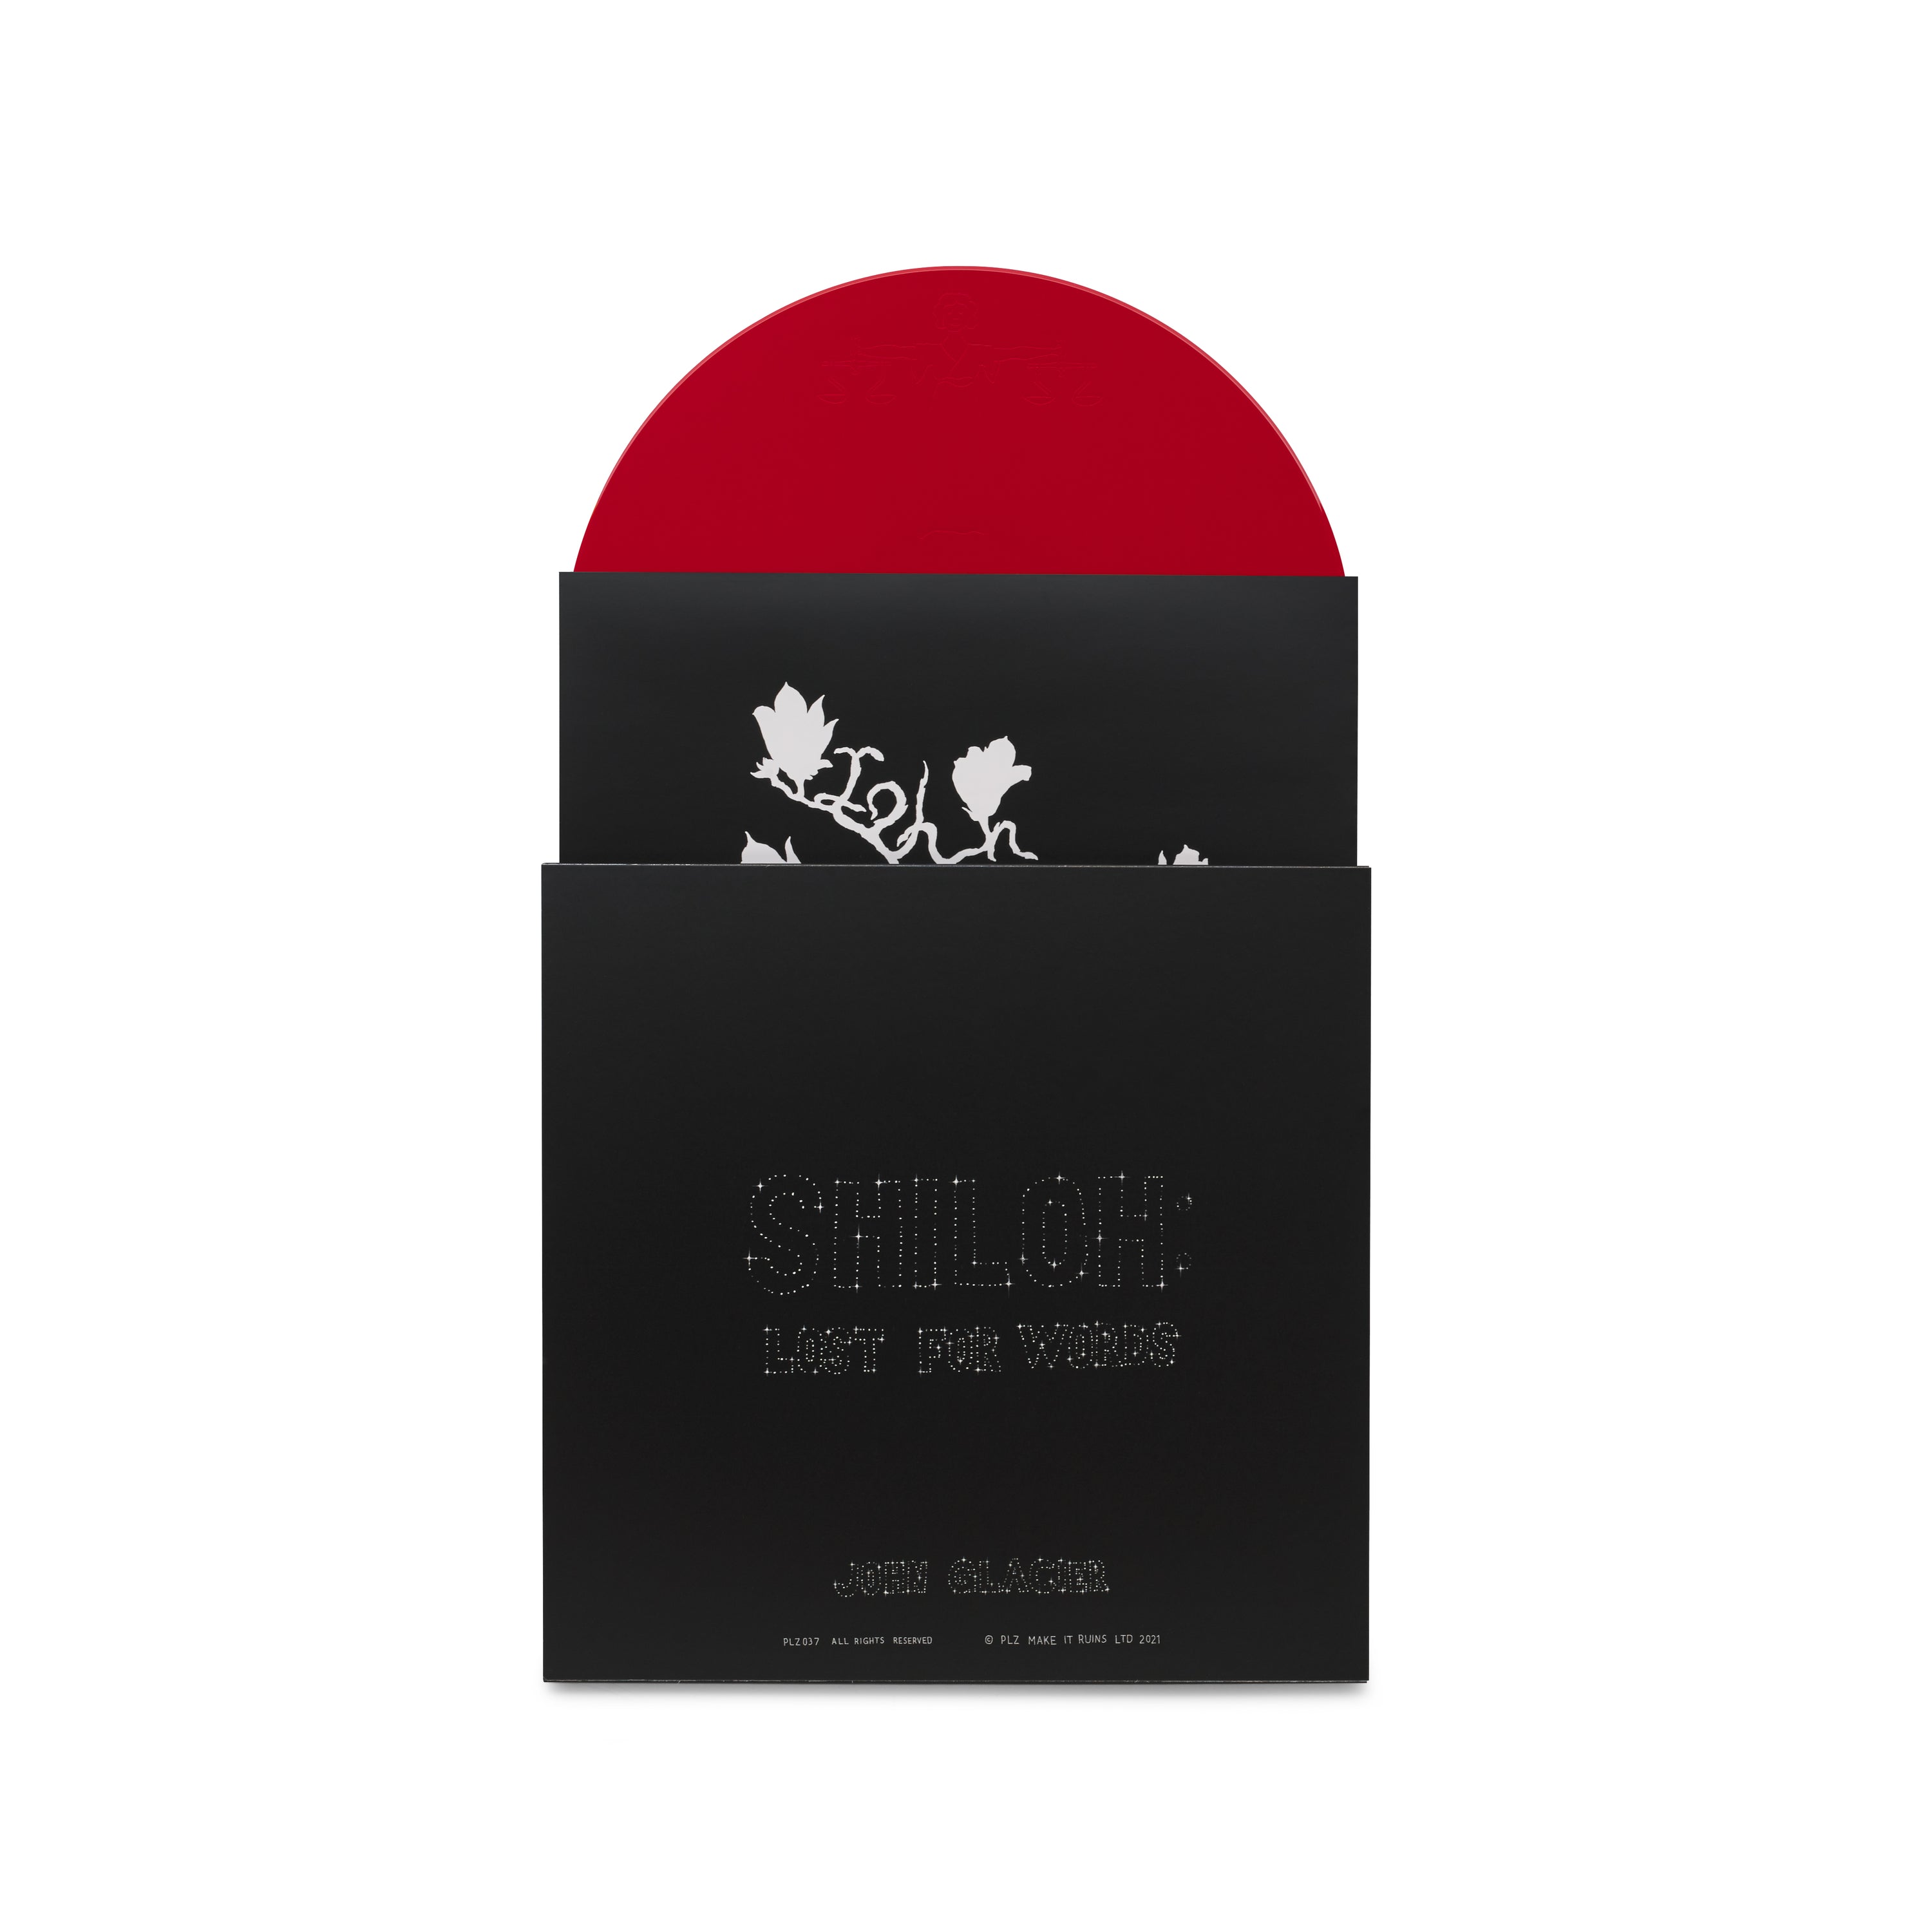 John Glacier - SHILOH: Lost For Words 12" Vinyl